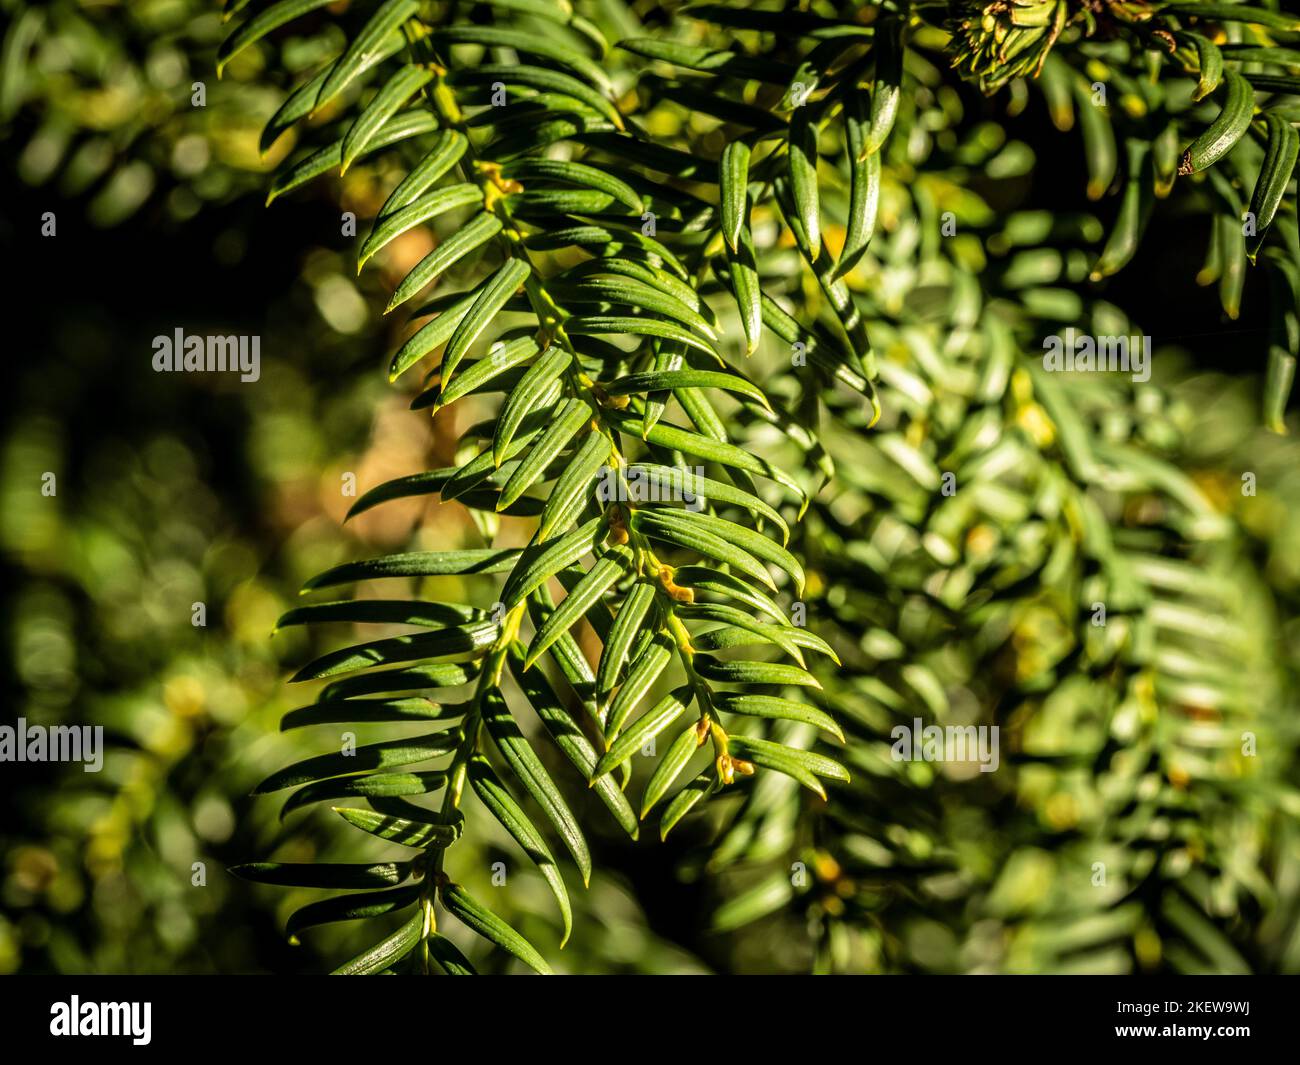 Primo piano del fogliame sempreverde di Taxus baccata, comunemente conosciuto come Yew che cresce in un giardino britannico. Foto Stock